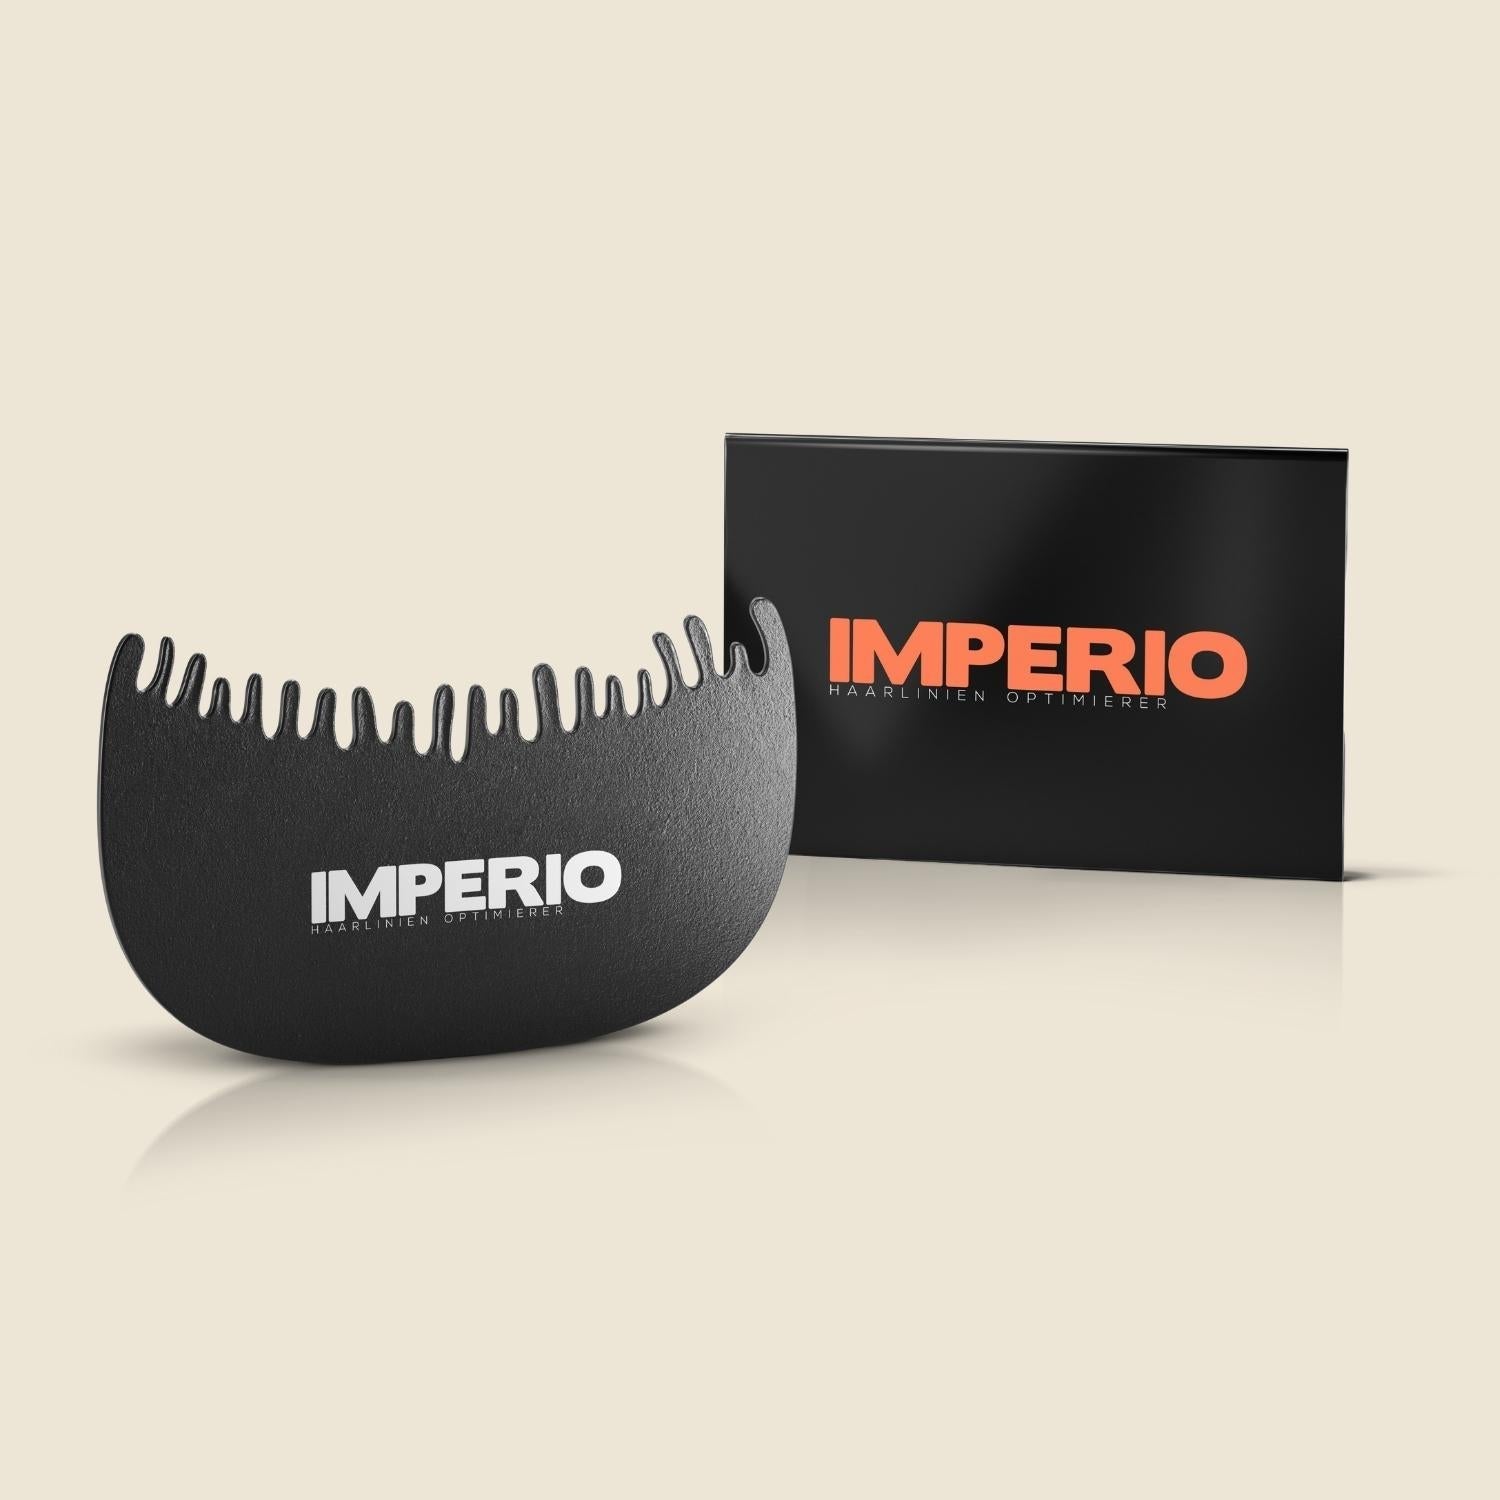 IMPERIO® Haarlinien Optimierer | Die Schablone für Dein Streuhaar-IMPERIO COSMETICS